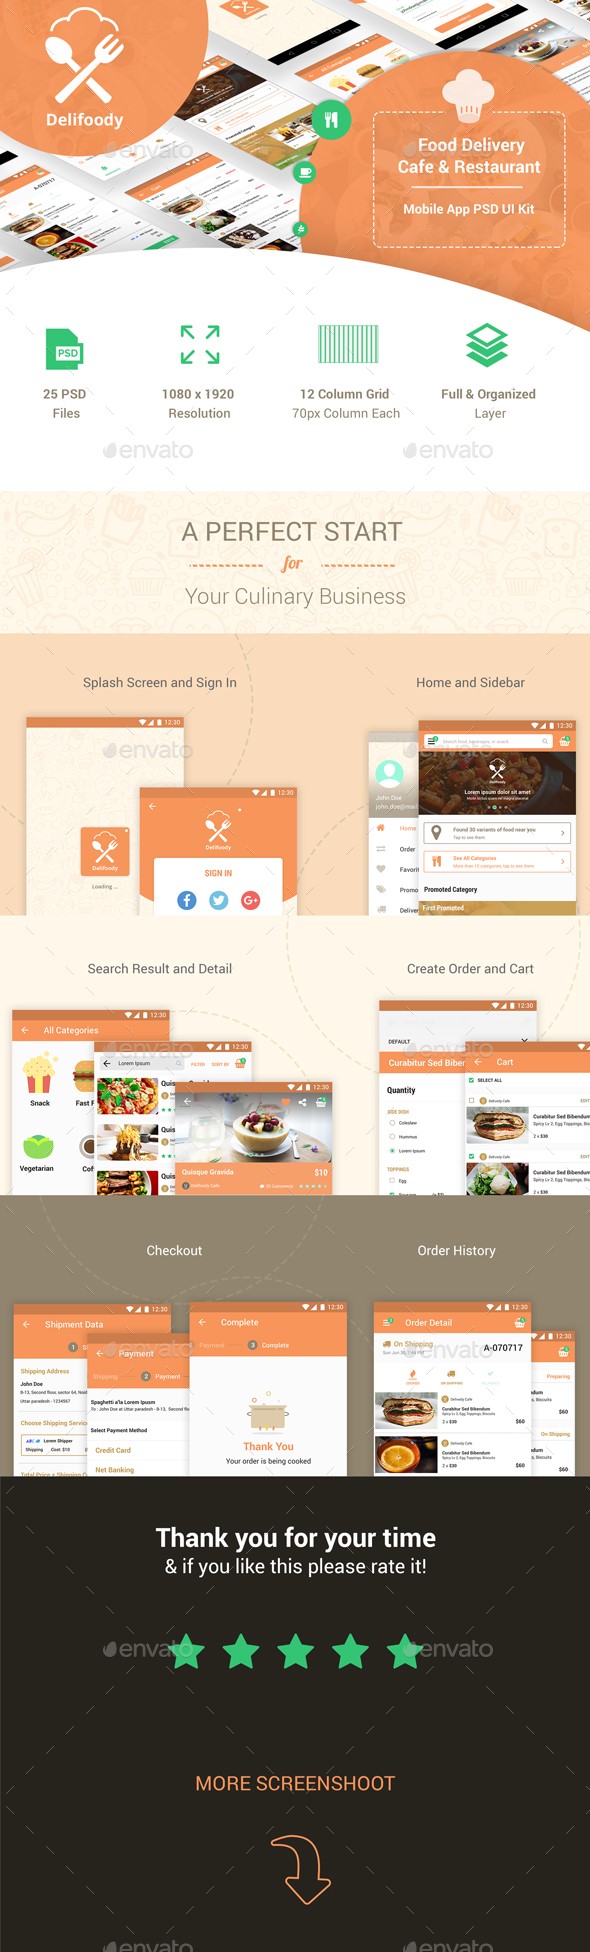 تحویل غذا - کیت رابط کاربر موبایل تحویل مواد غذایی و رستوران 